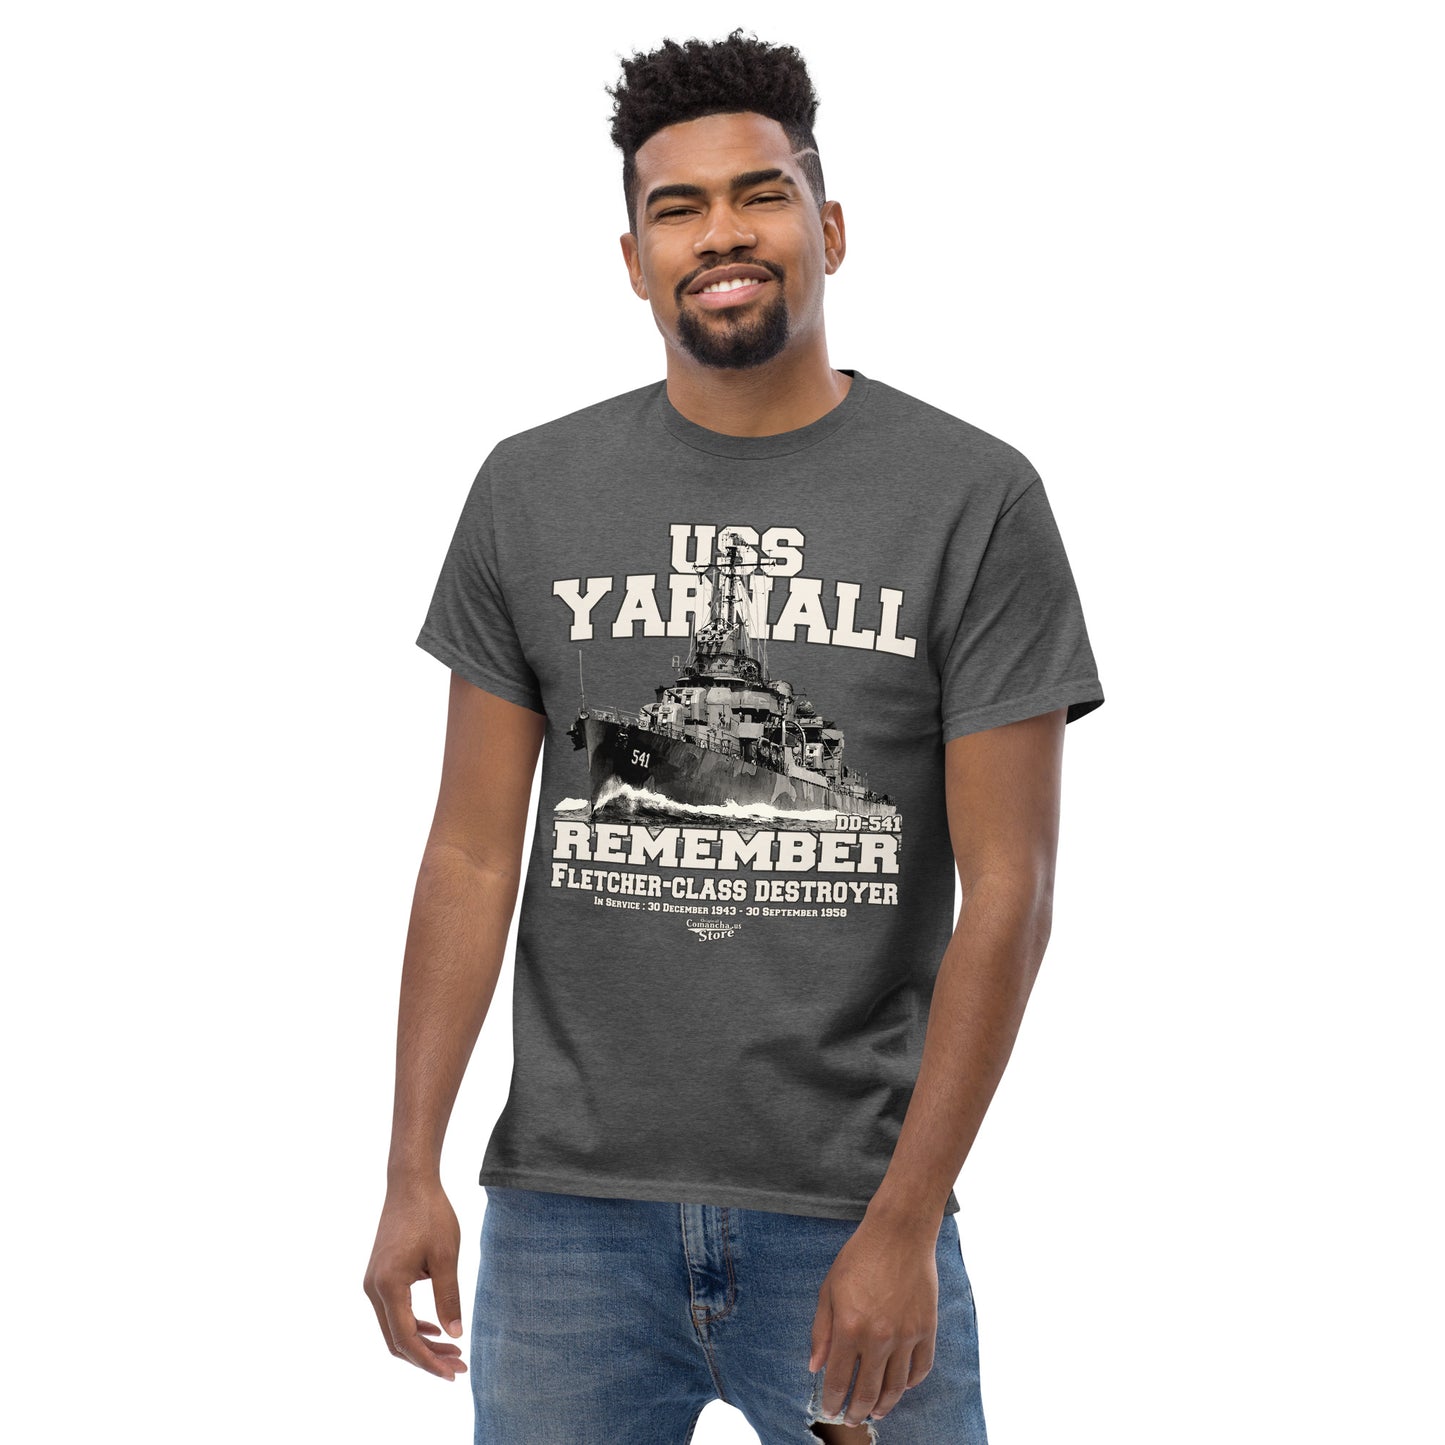 USS Yarnall DD-541 destroyer t-shirt